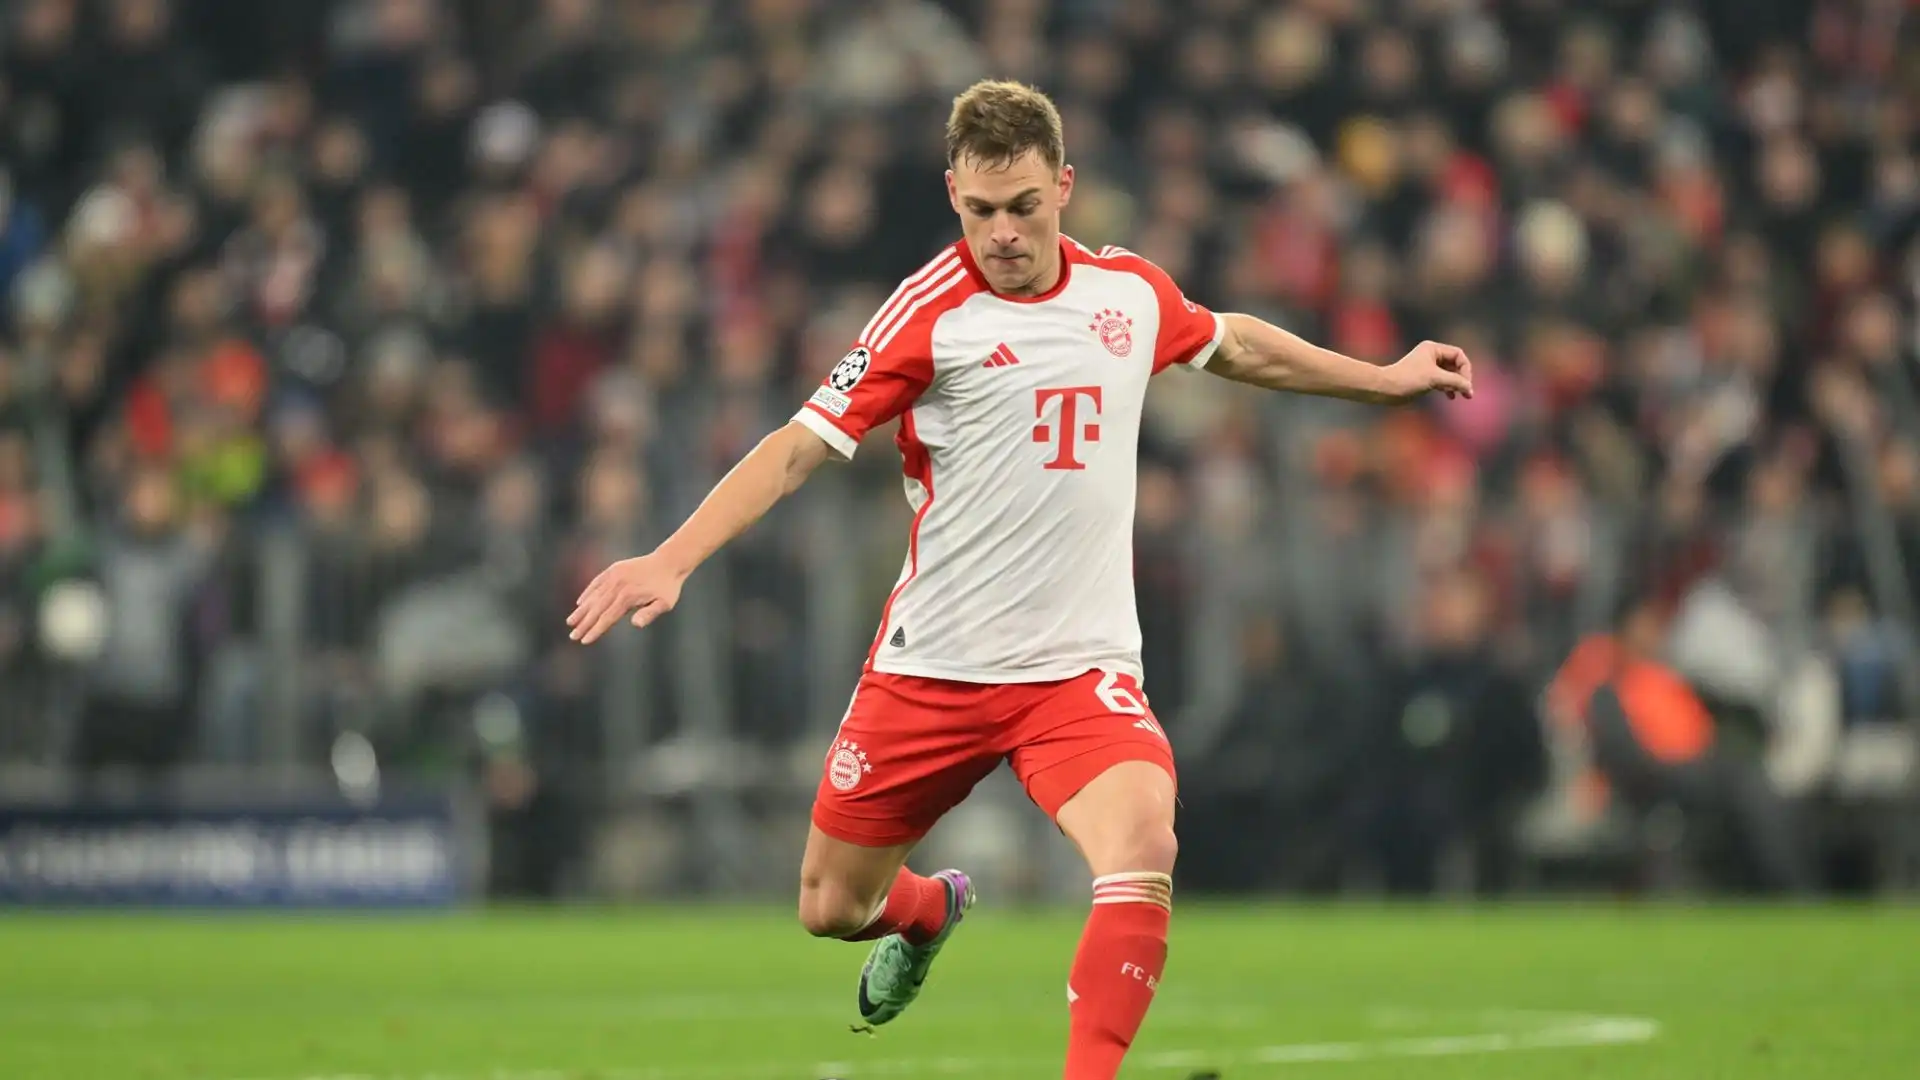 La dirigenza del Bayern Monaco vorrebbe prolungare l'accordo ma ci sarà da trovare l'intesa con il calciatore